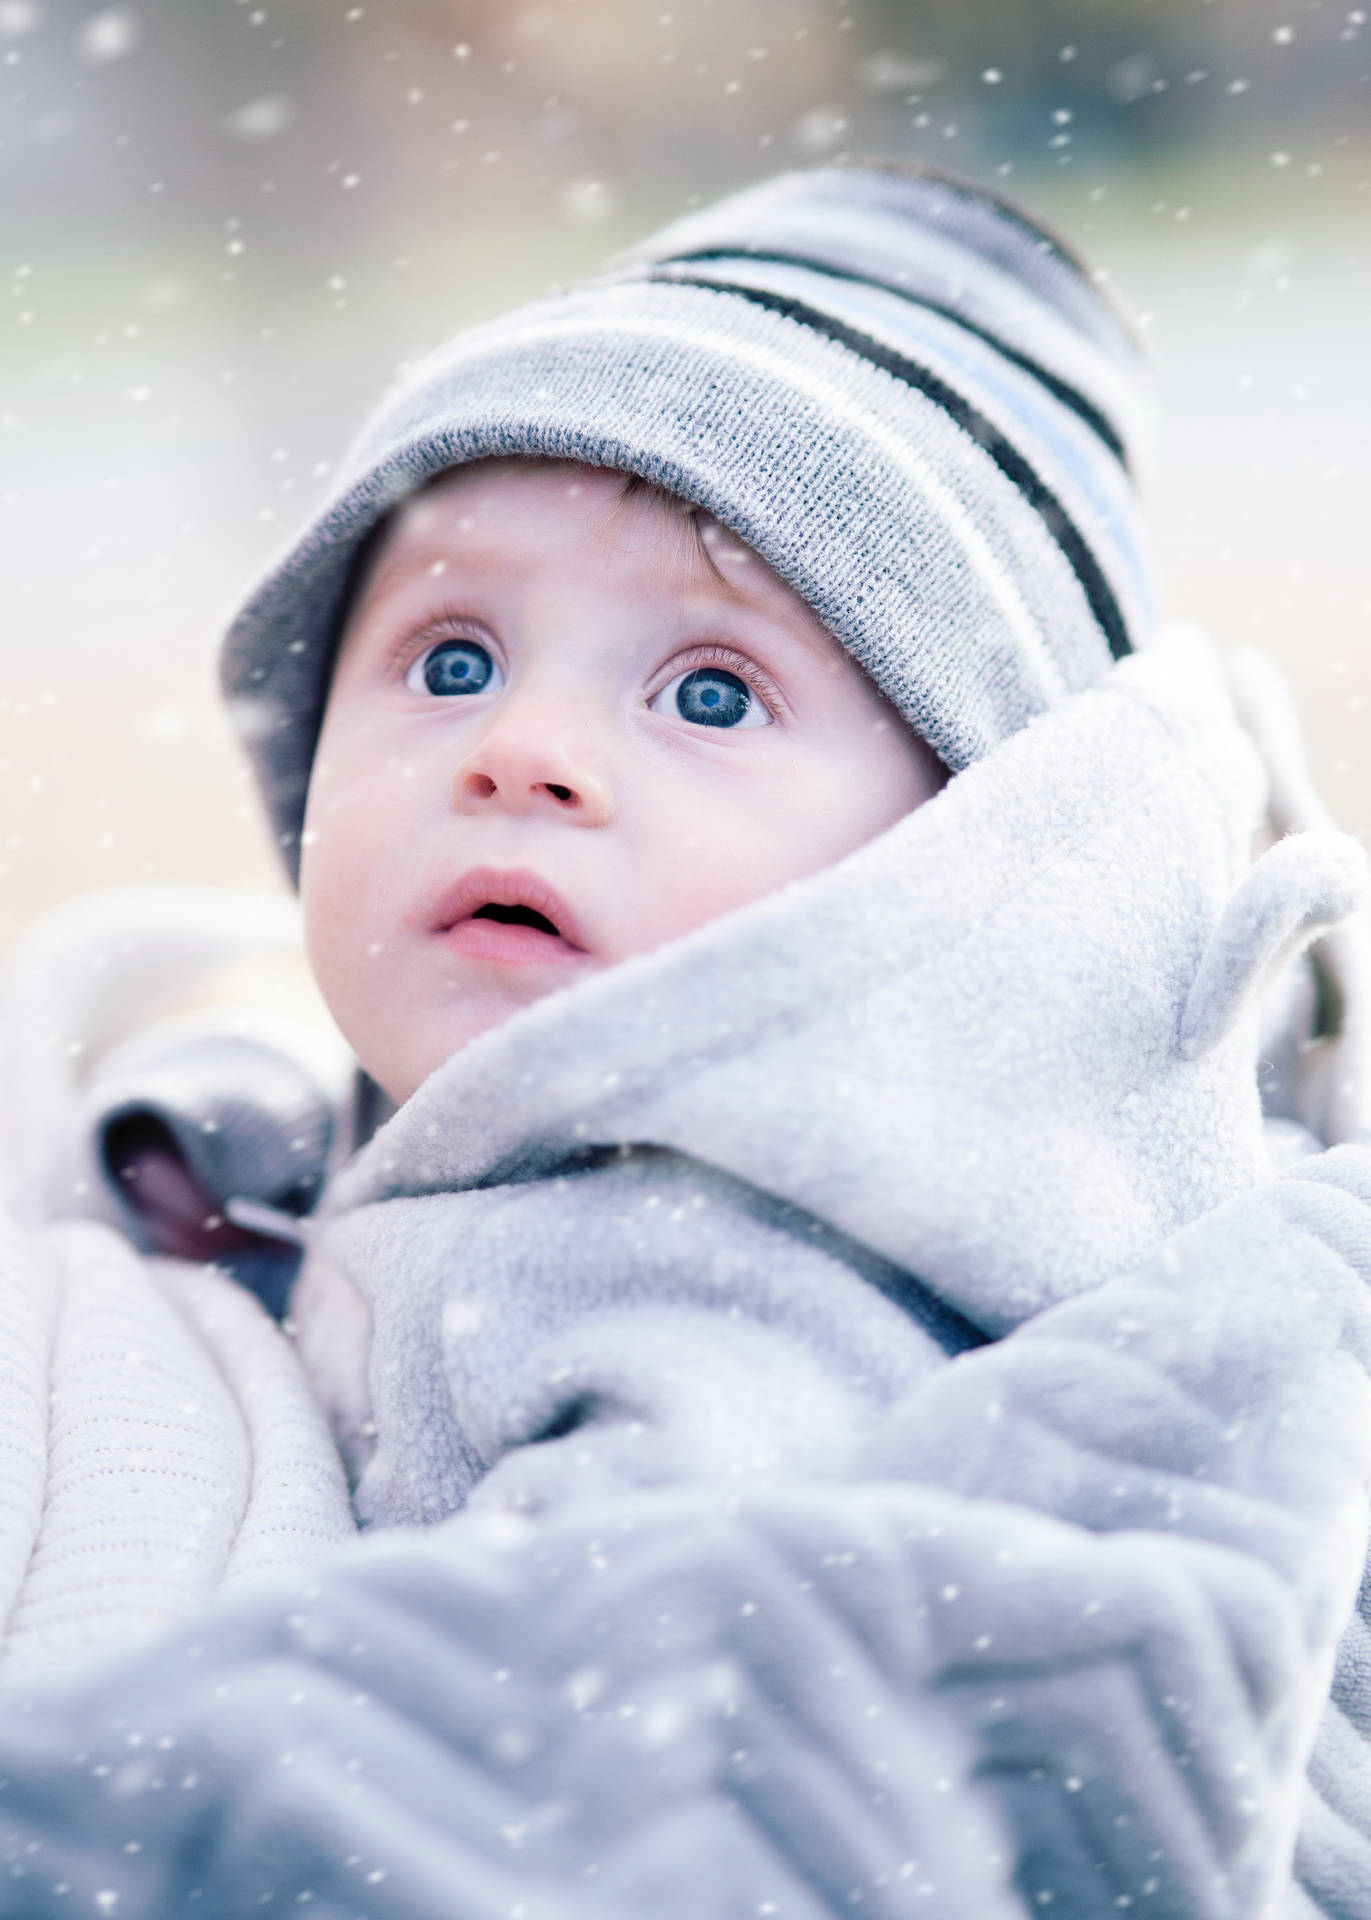 Lindobebé De Invierno Admirando La Nieve Que Cae. Fondo de pantalla